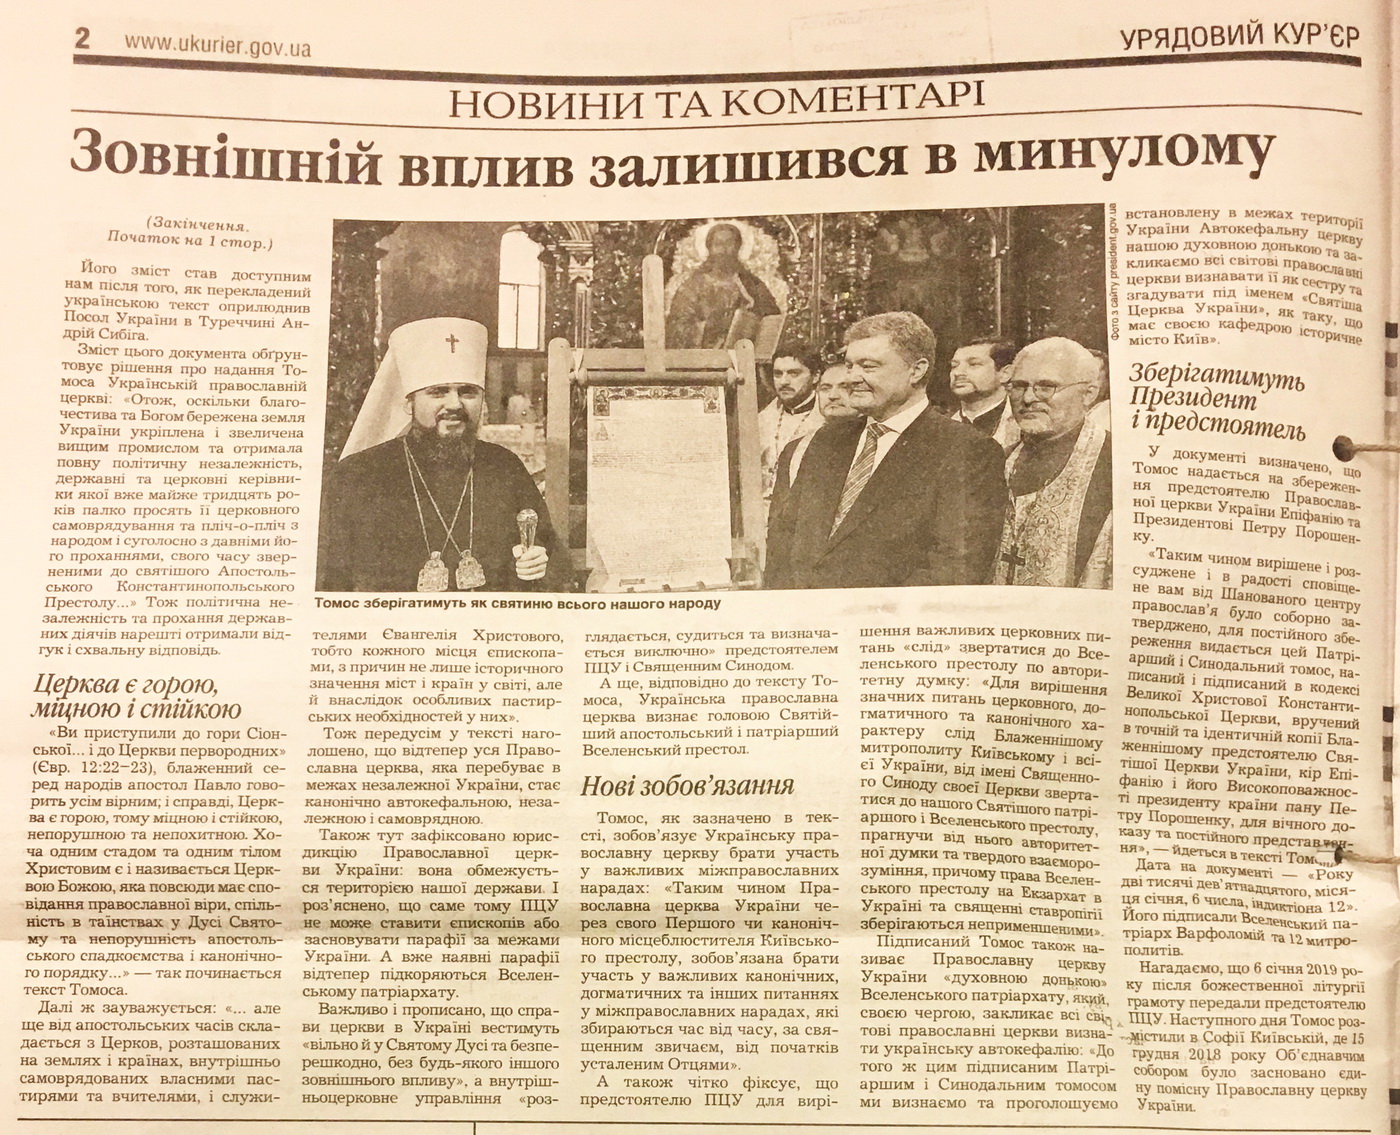 28 01 2019 Kyiv gazety dzynsa poroshenko4